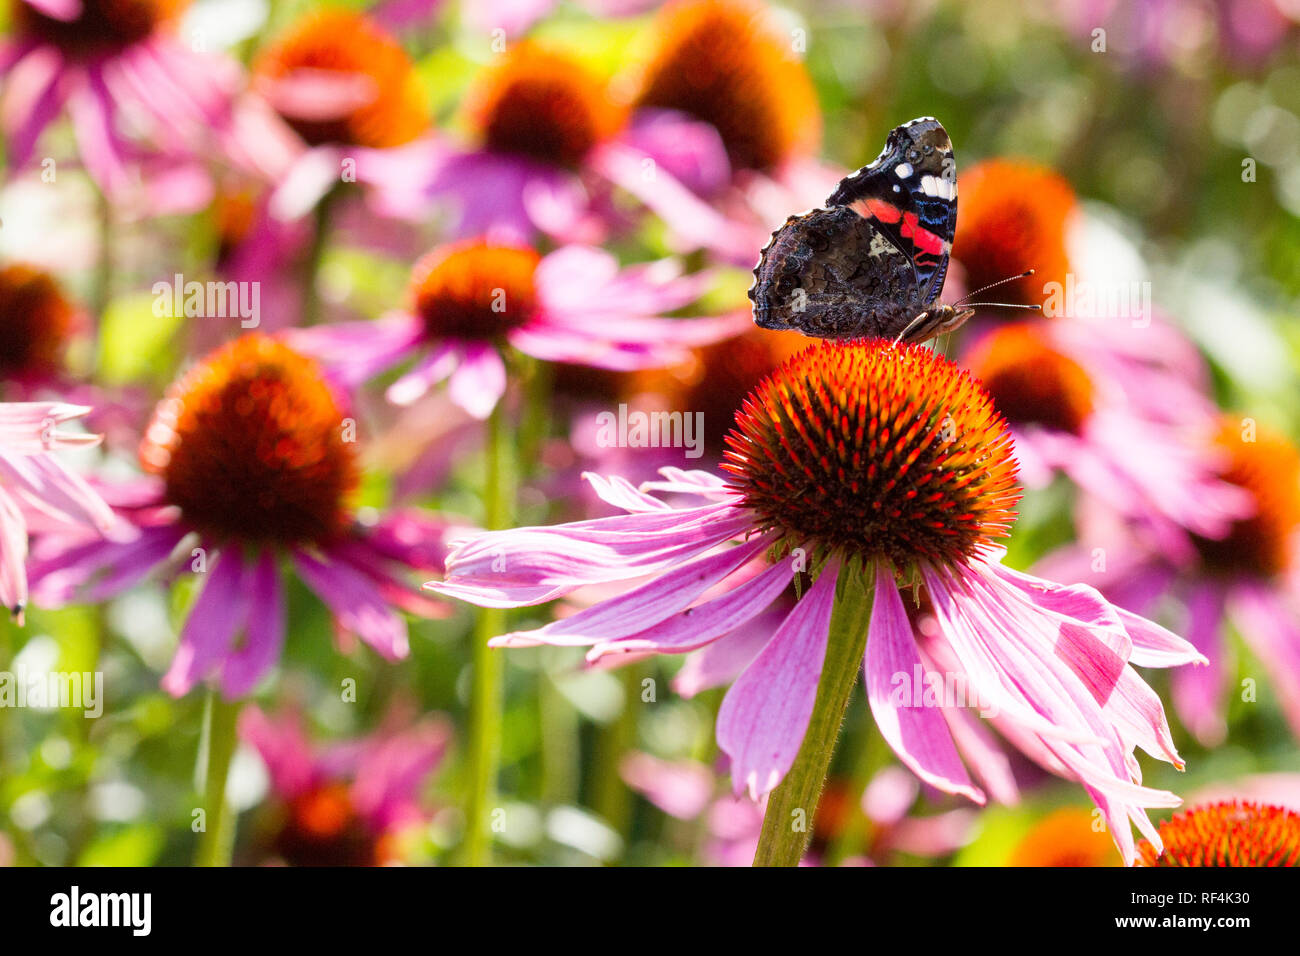 Bild von einem Schmetterling auf einer Blume in einer bunten Wiese Stockfoto